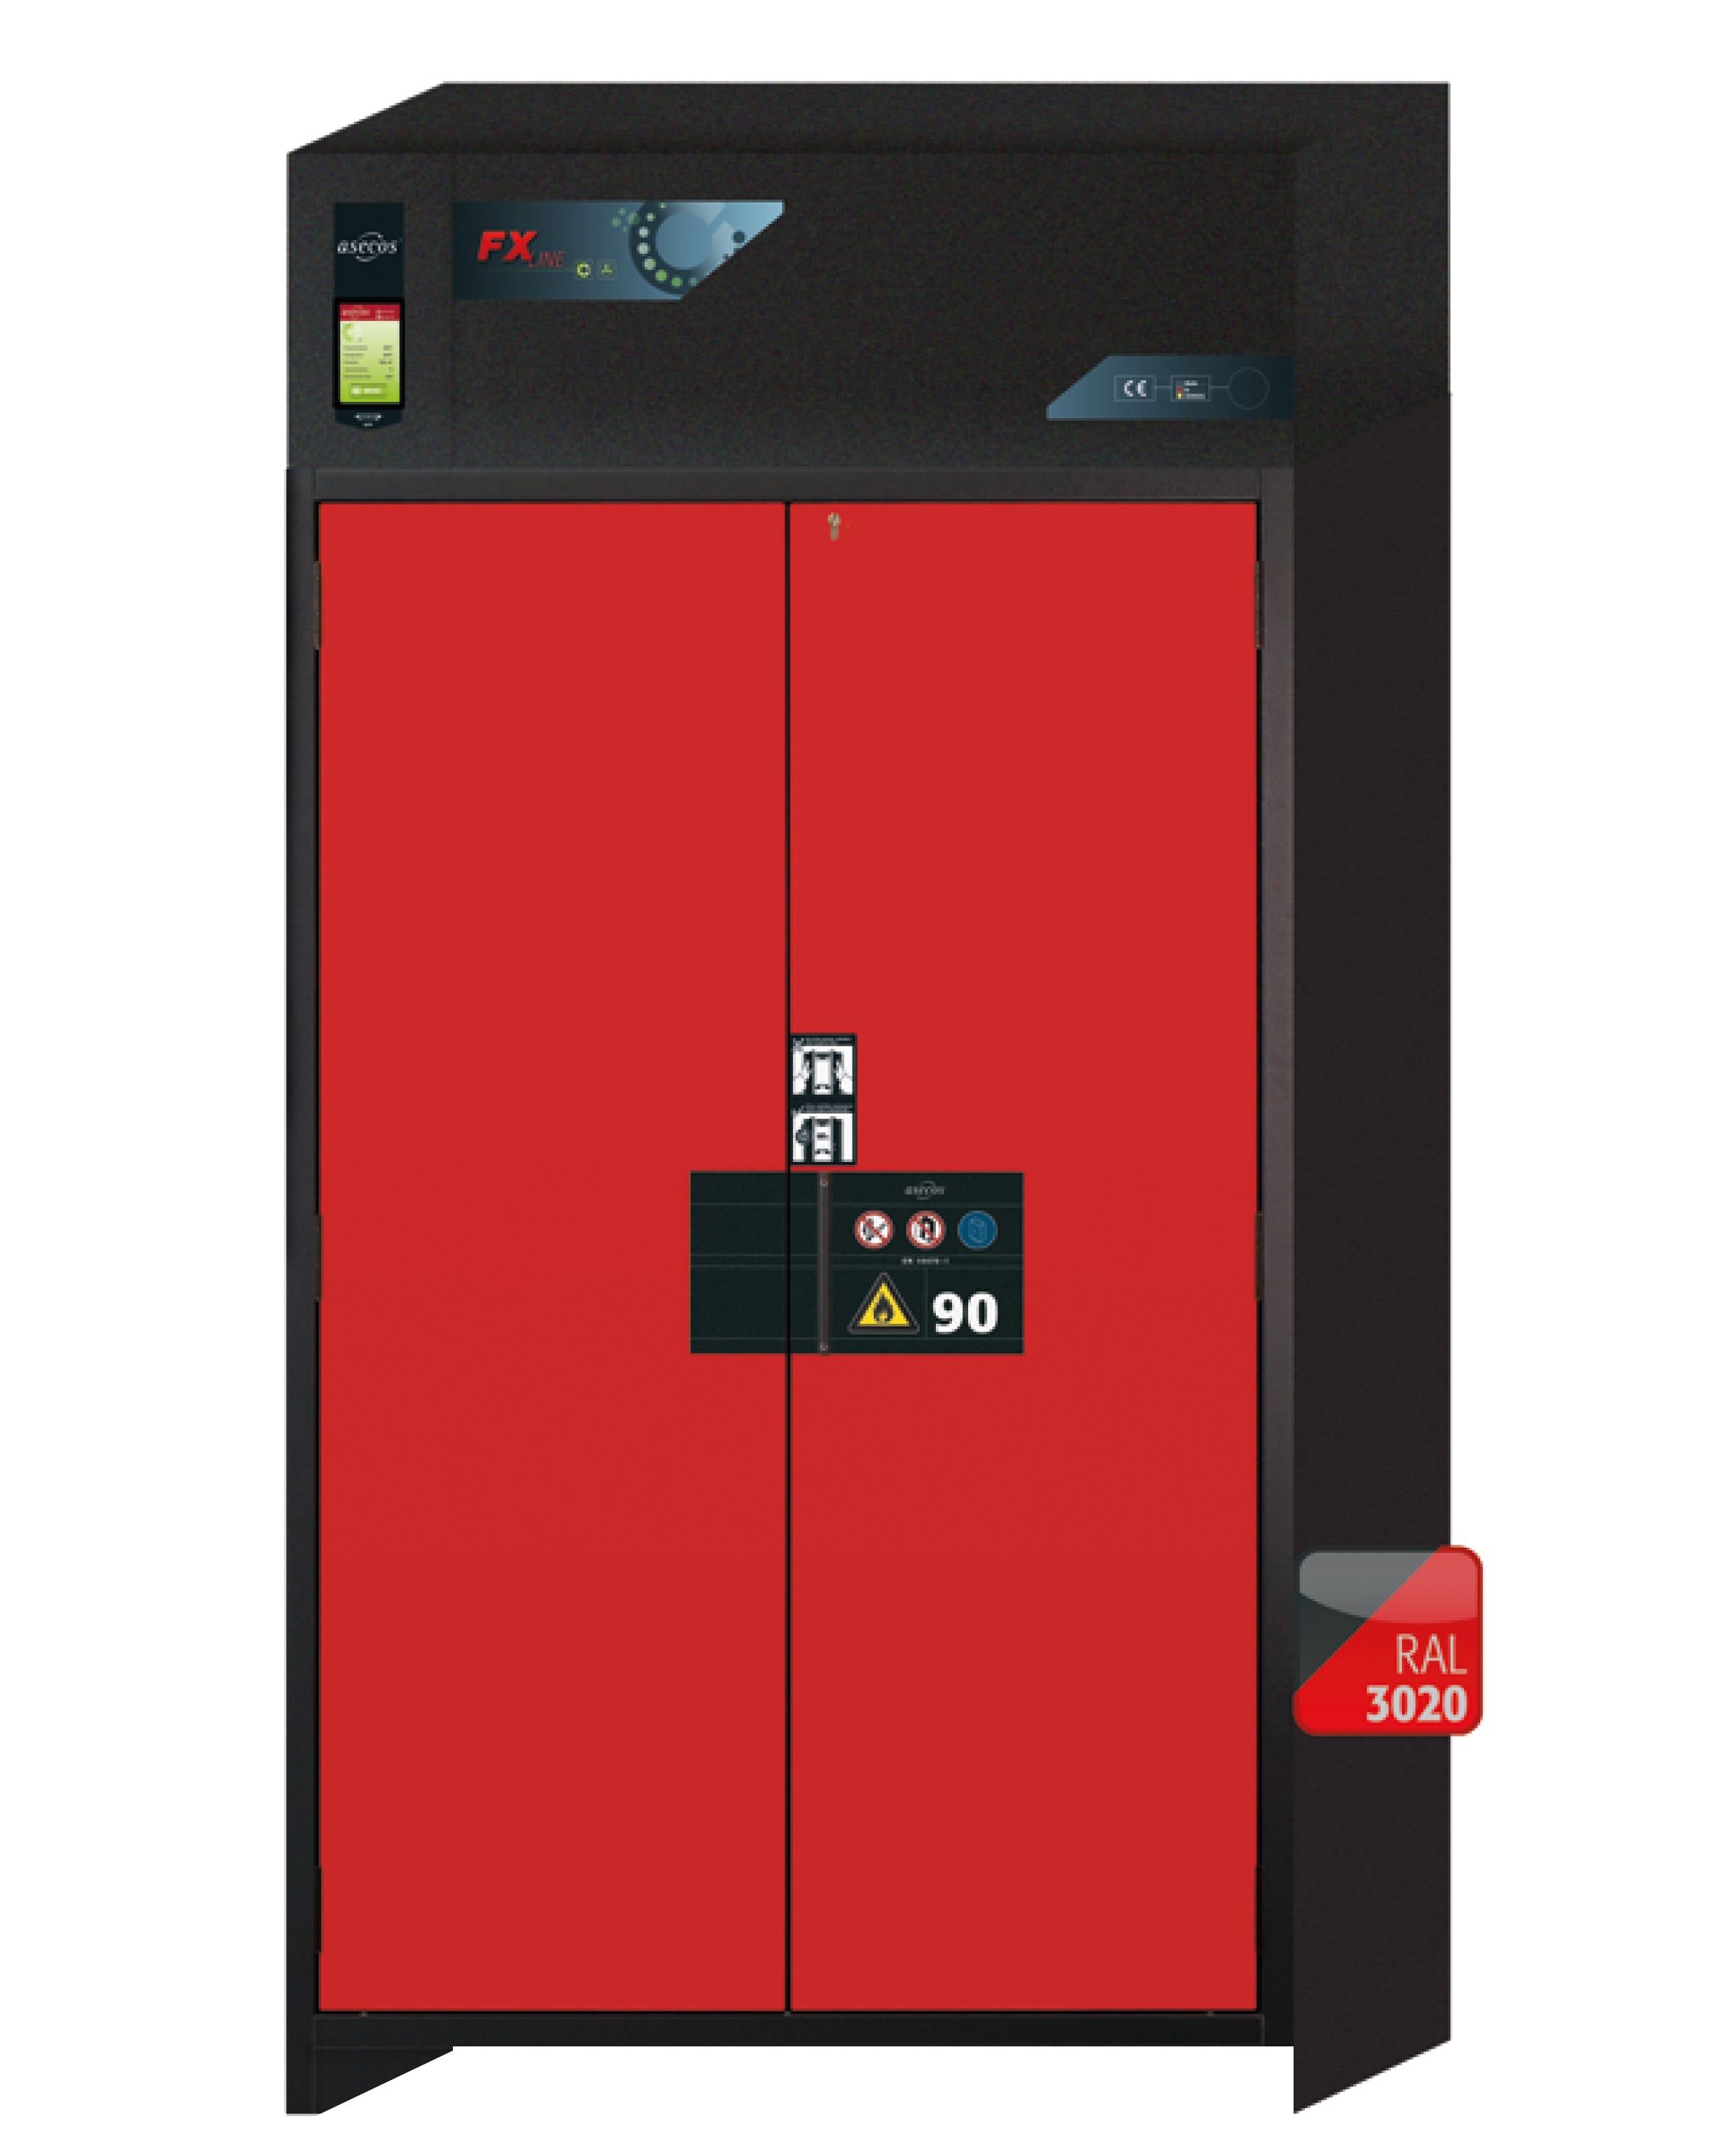 Armoire de filtration d'air de recirculation de type 90 FX-PEGASUS-90 modèle FX90.229.120.WDAC en rouge signalisation RAL 3020 avec 4x pieds de plateau standard (polypropylène)